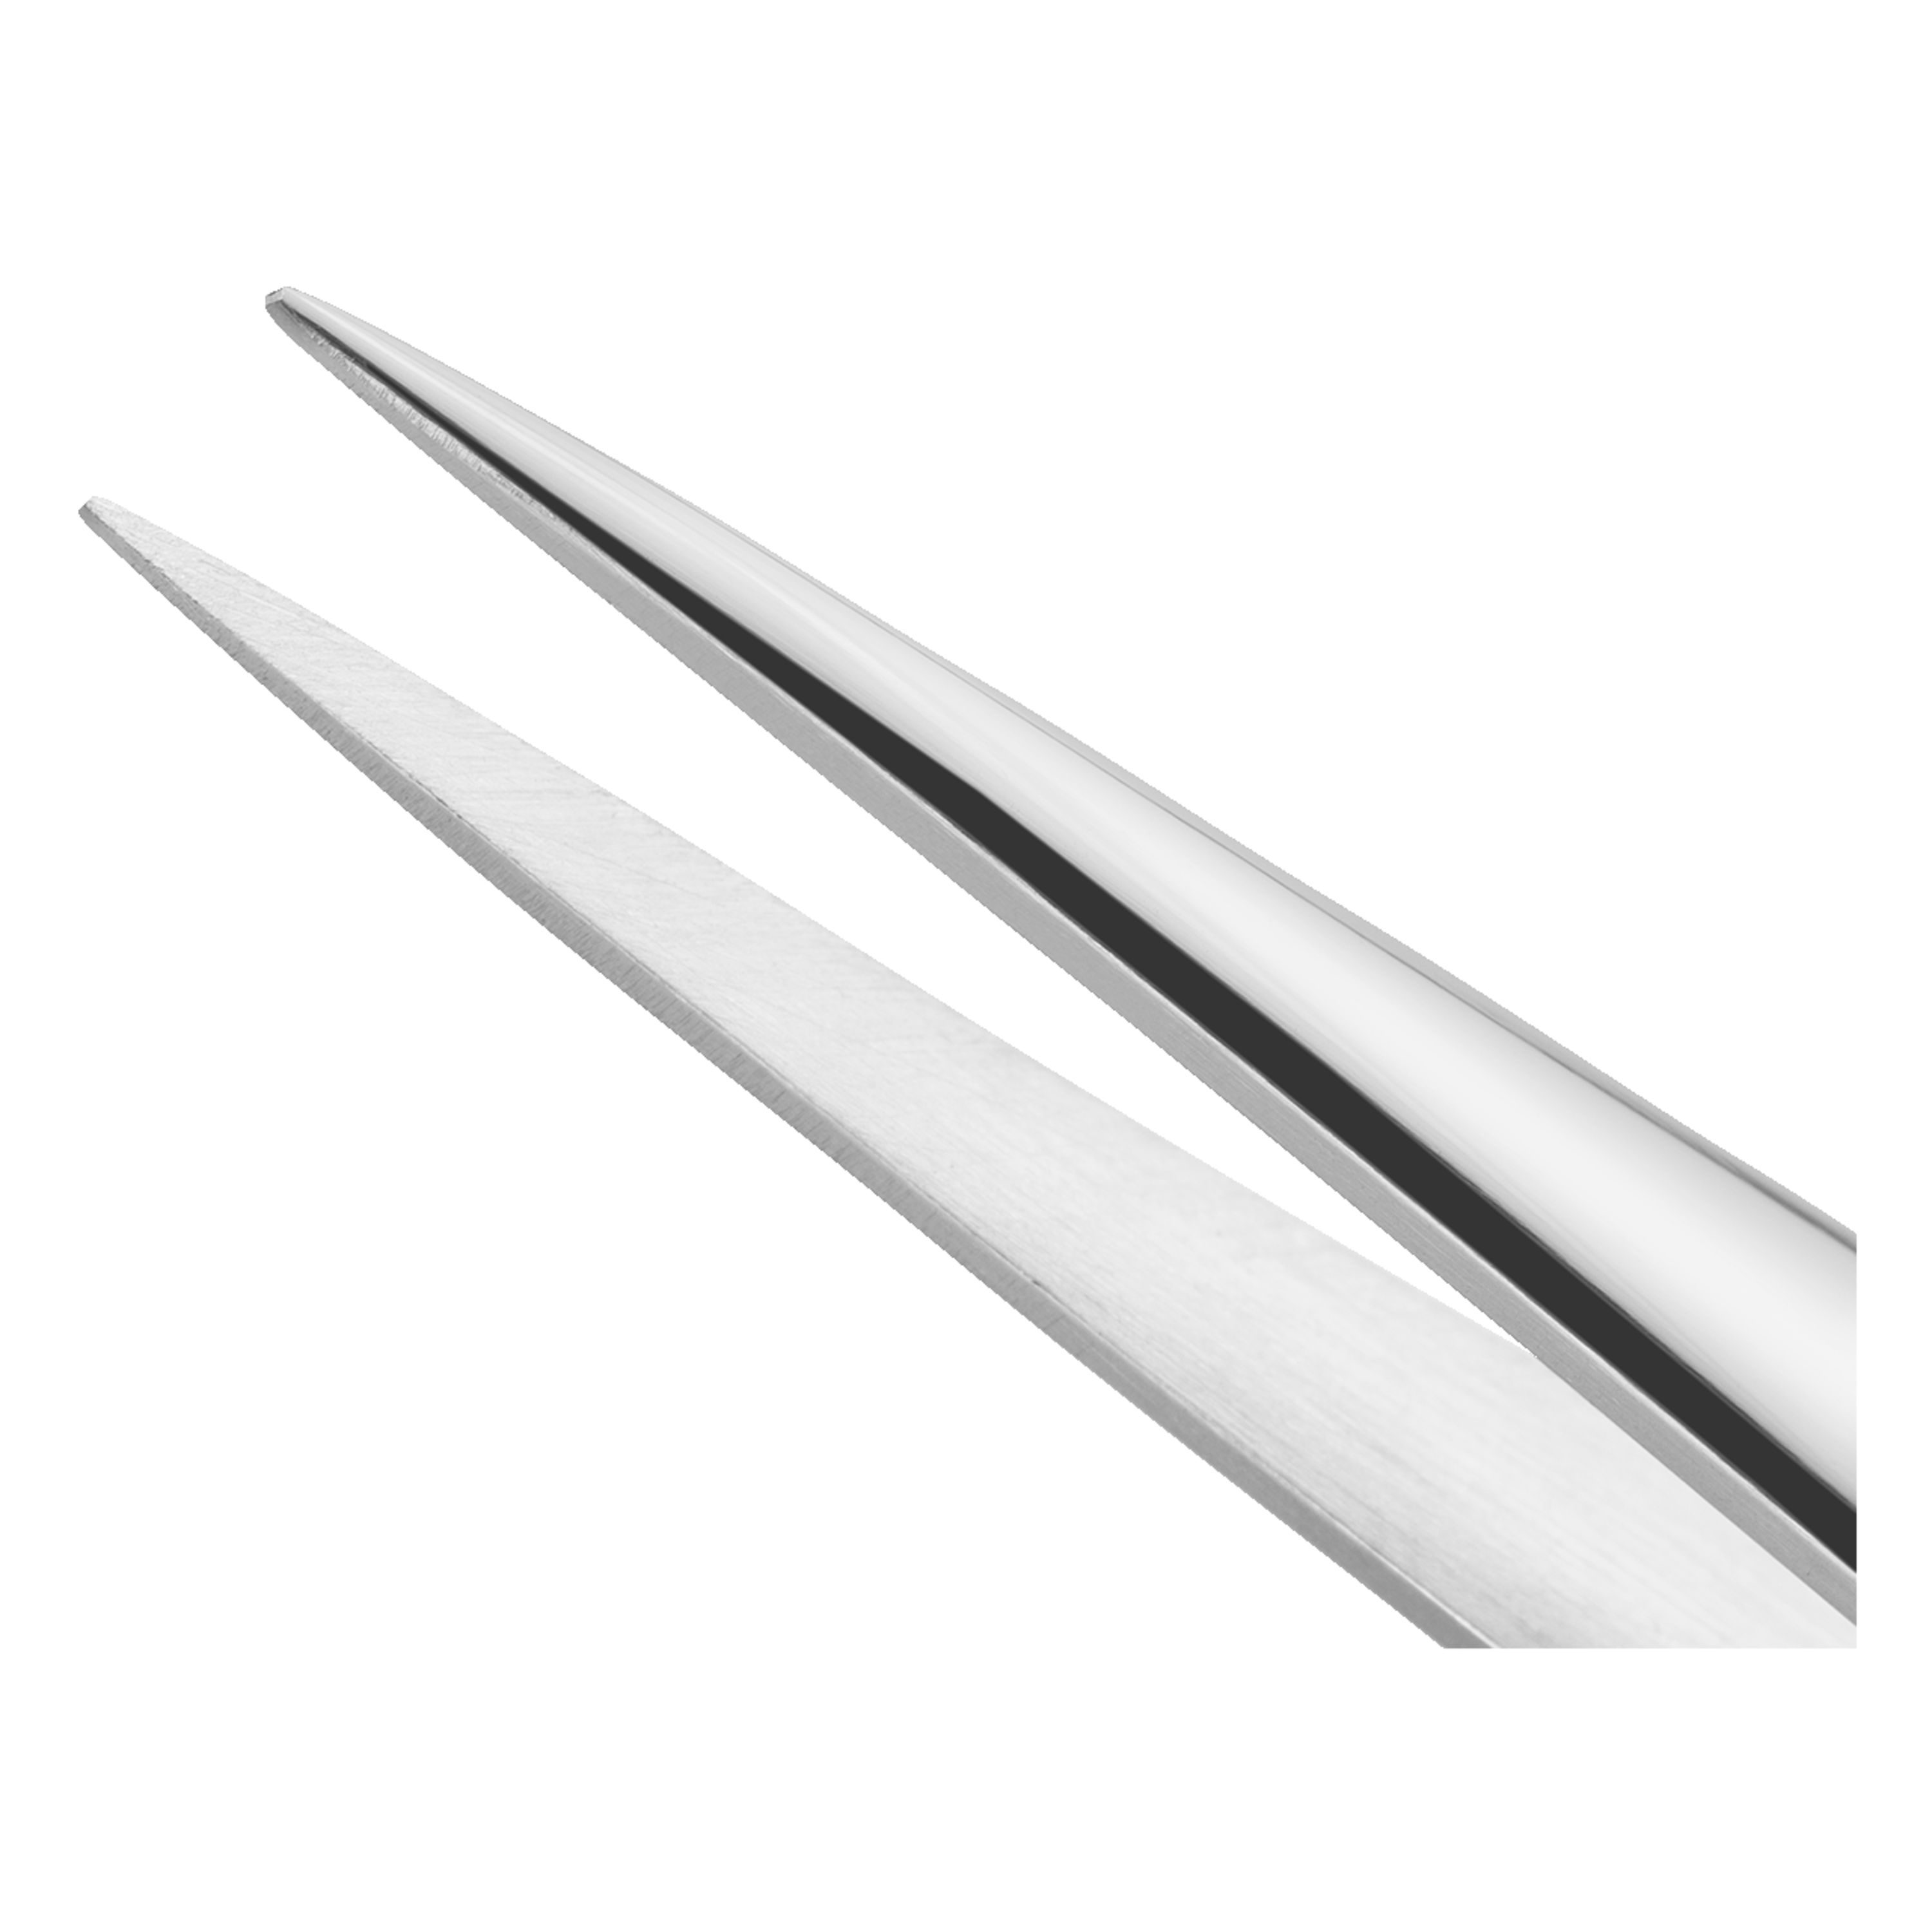 Slant Point Tweezers – Excel Blades